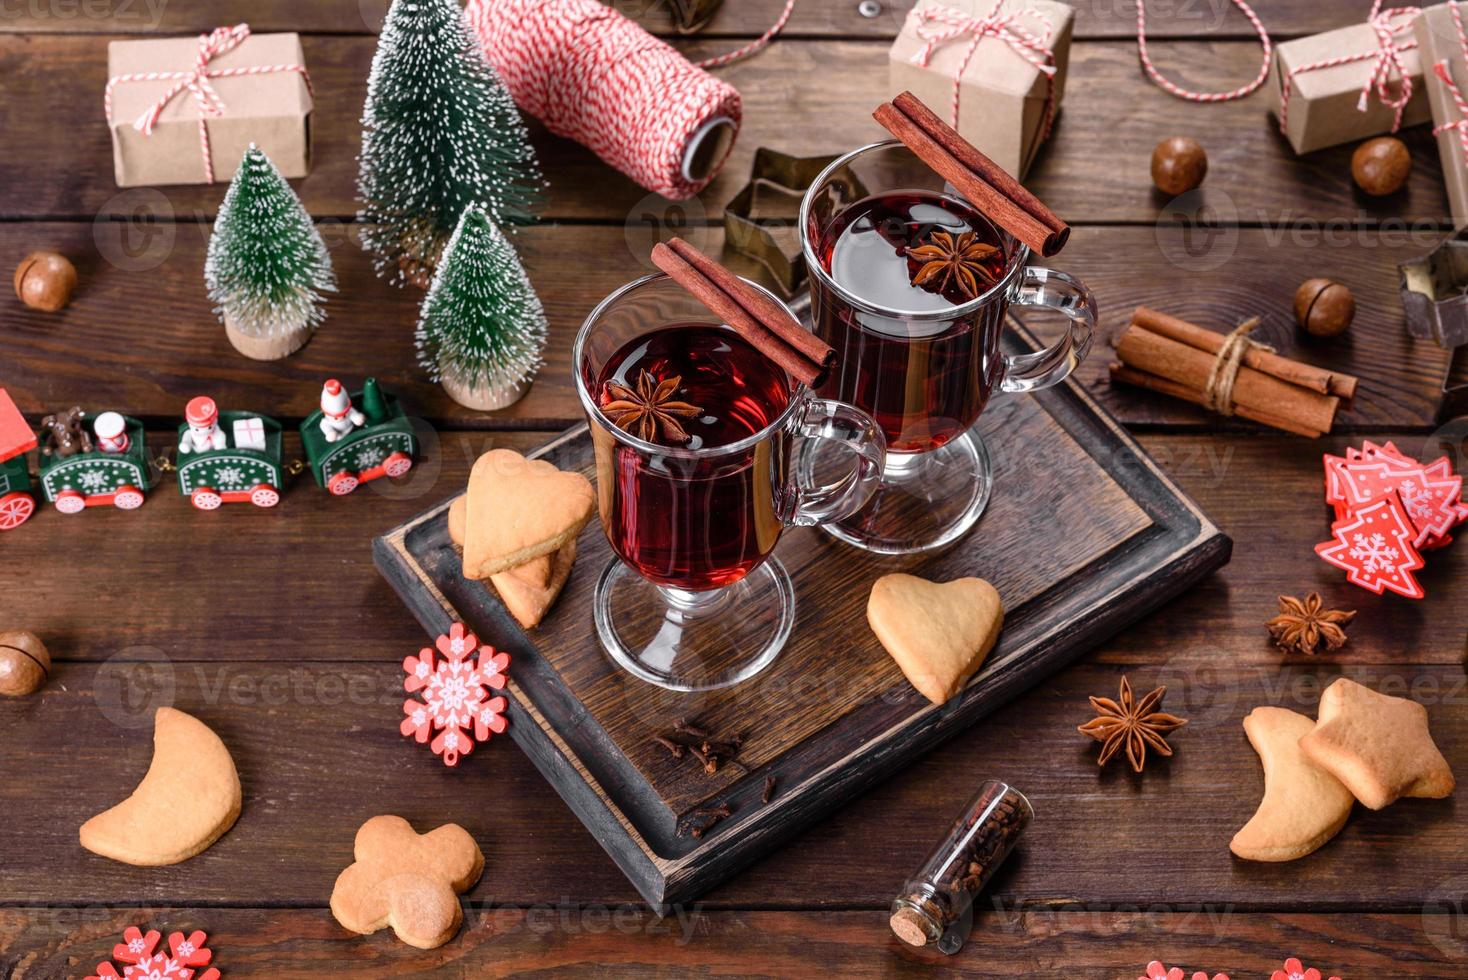 jul glöggrött vin med kryddor och frukter på ett mörkt bord. foto